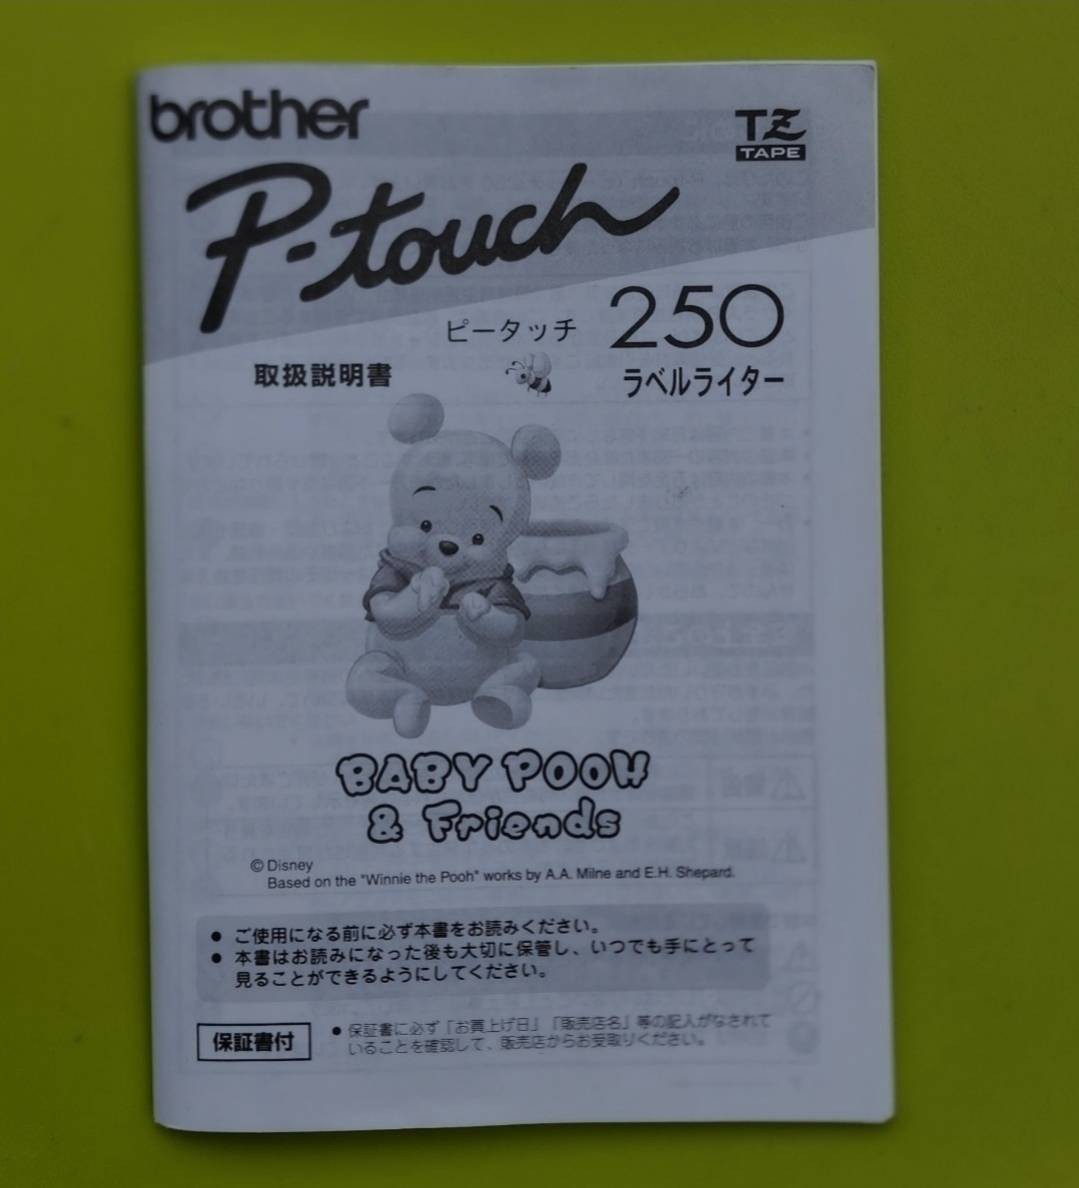 brother P-touch ピータッチ 250 ラベルライター 取説あり 本体のみ 中古現状品 PT-250 ぷーさん プーさん ベビープー_画像4